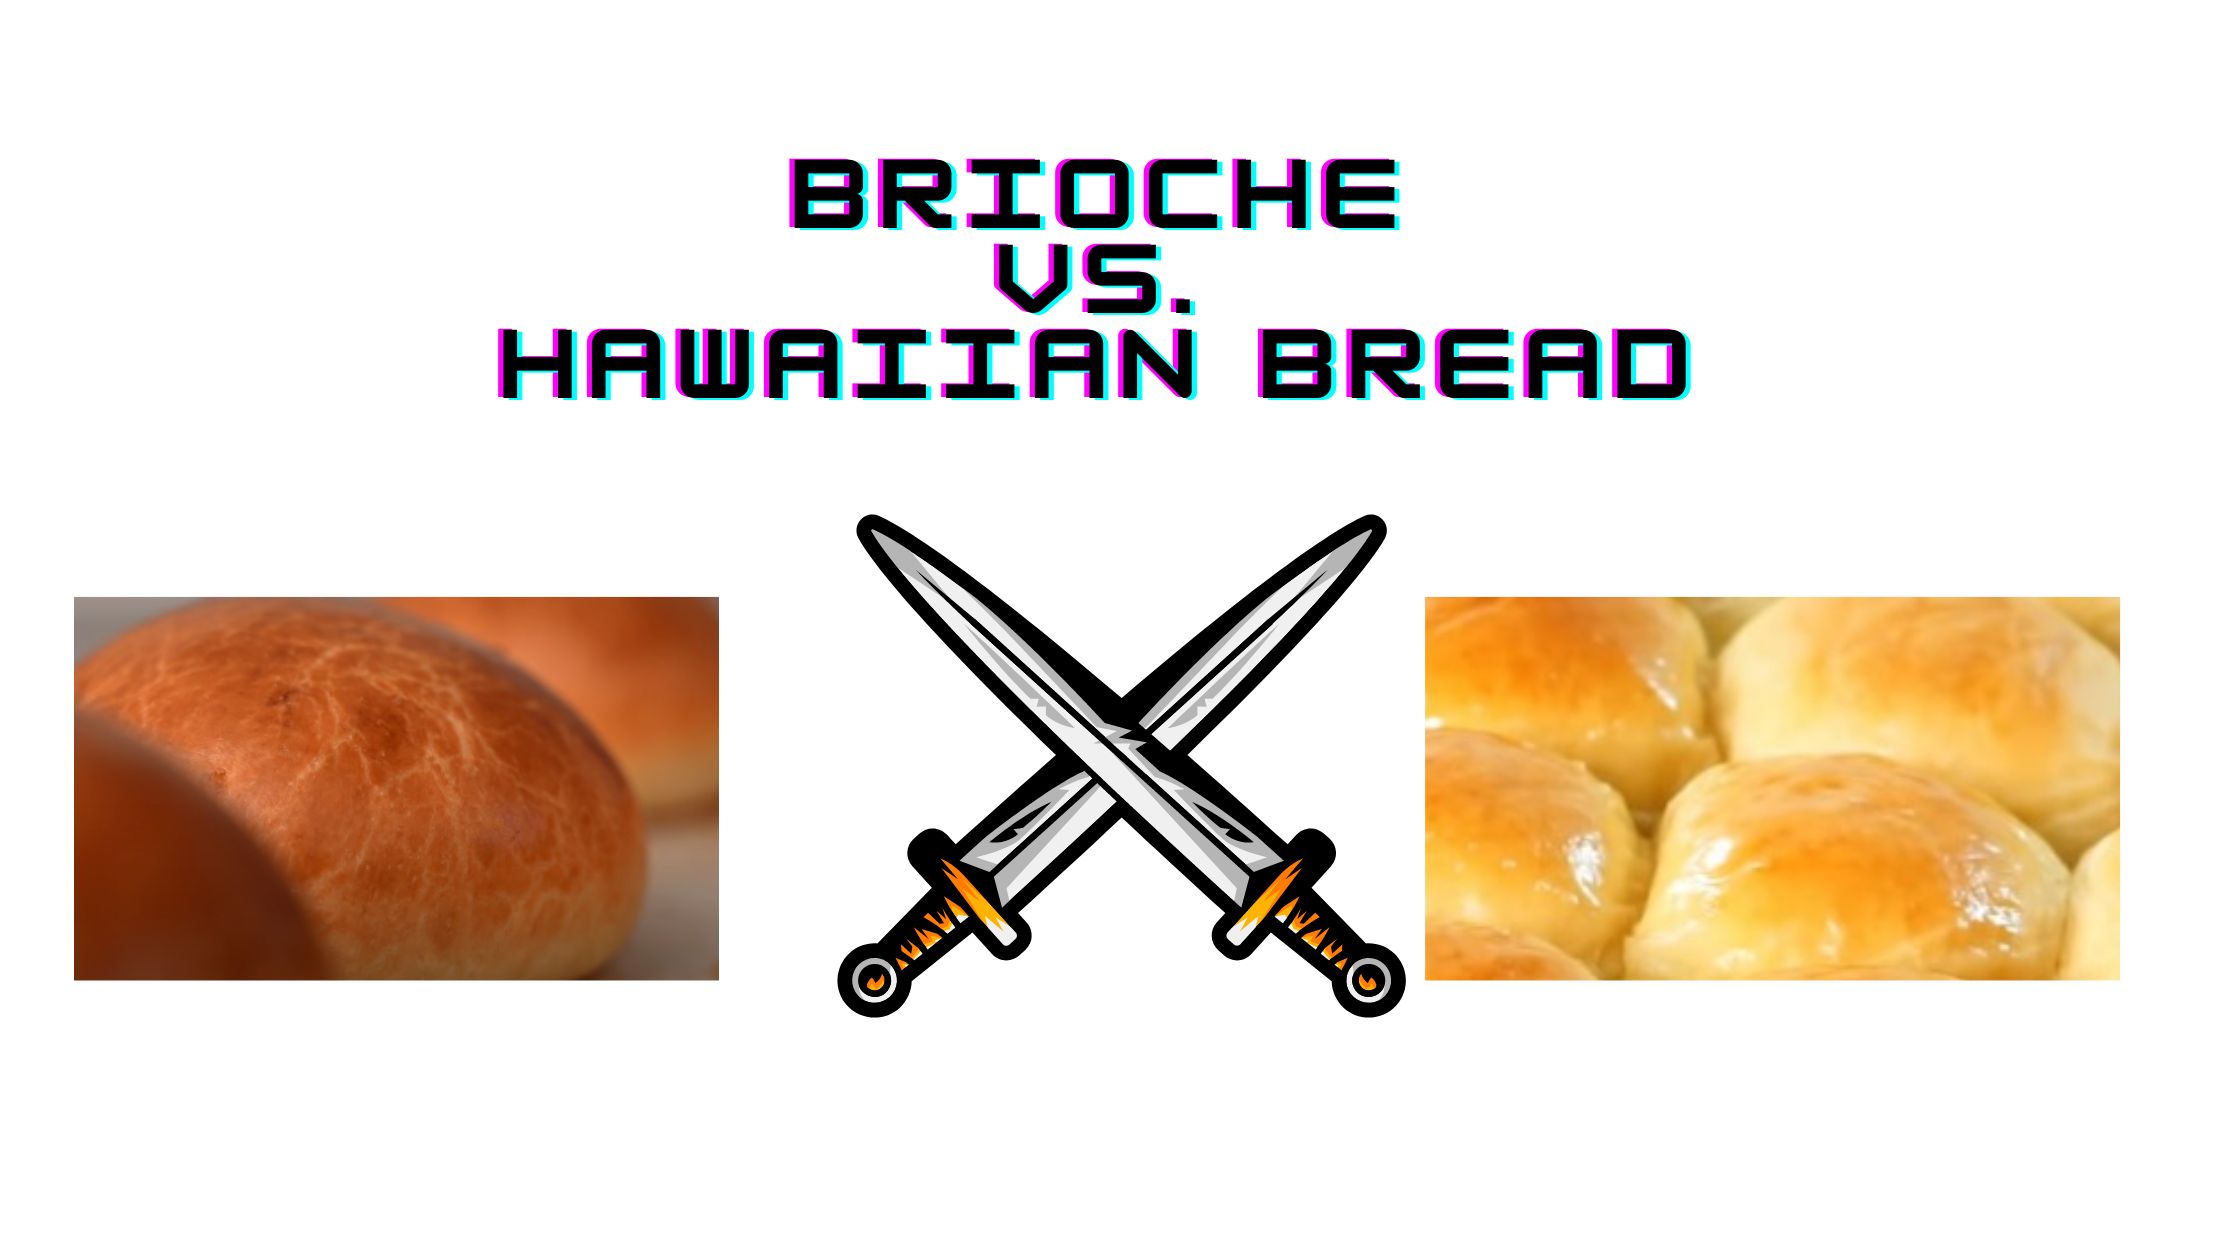 Compare Brioche and Hawaiian Bread